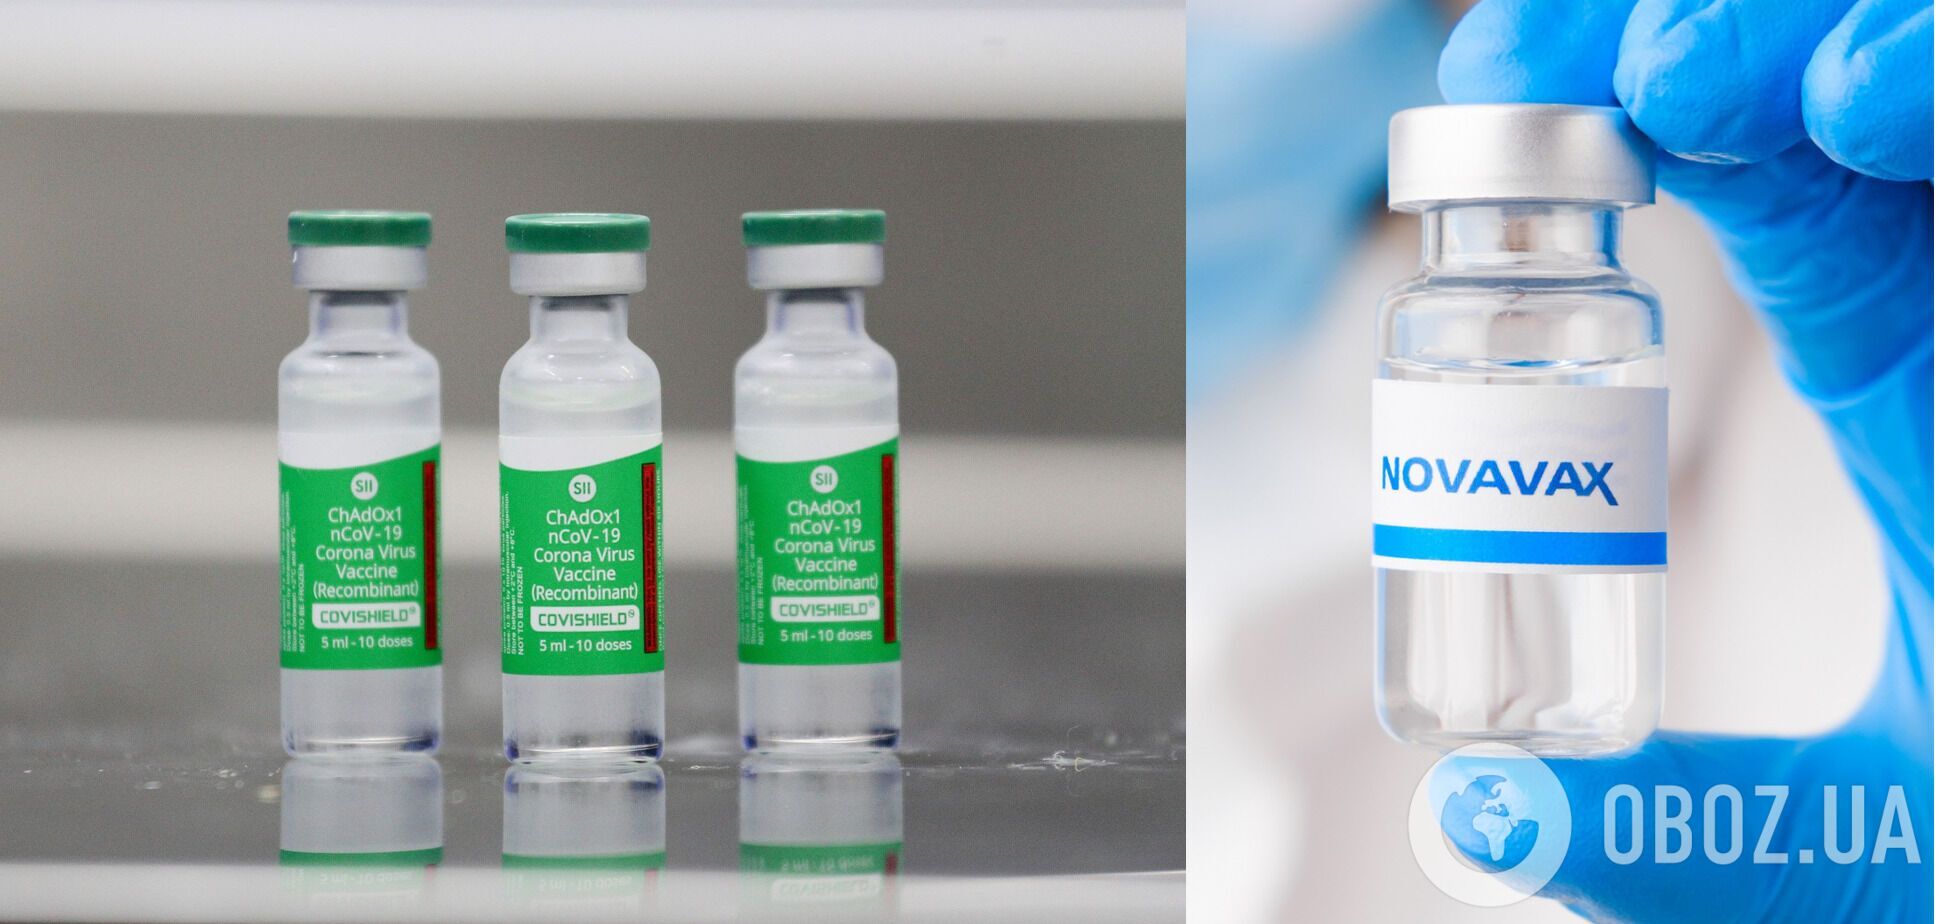 Украина собирается разорвать контракты на поставку вакцин CoviShield и Novavax из Индии